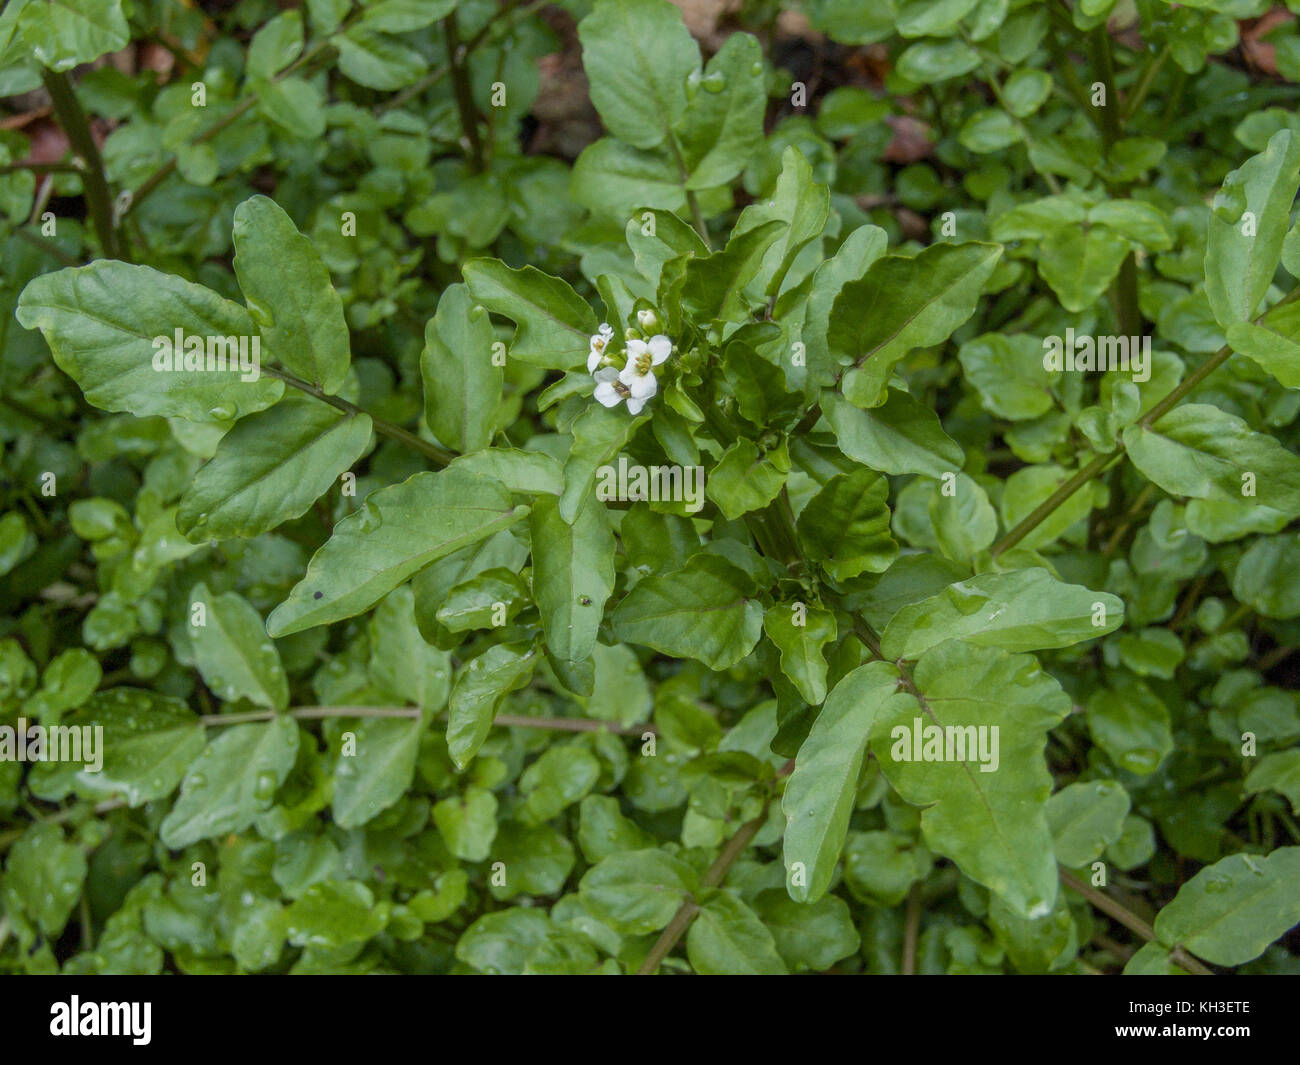 Acqua / cress Rorippa nasturtium-aquaticum / Nasturtium aquaticum / Nasturtium officinale cresce allo stato selvatico. Foto Stock